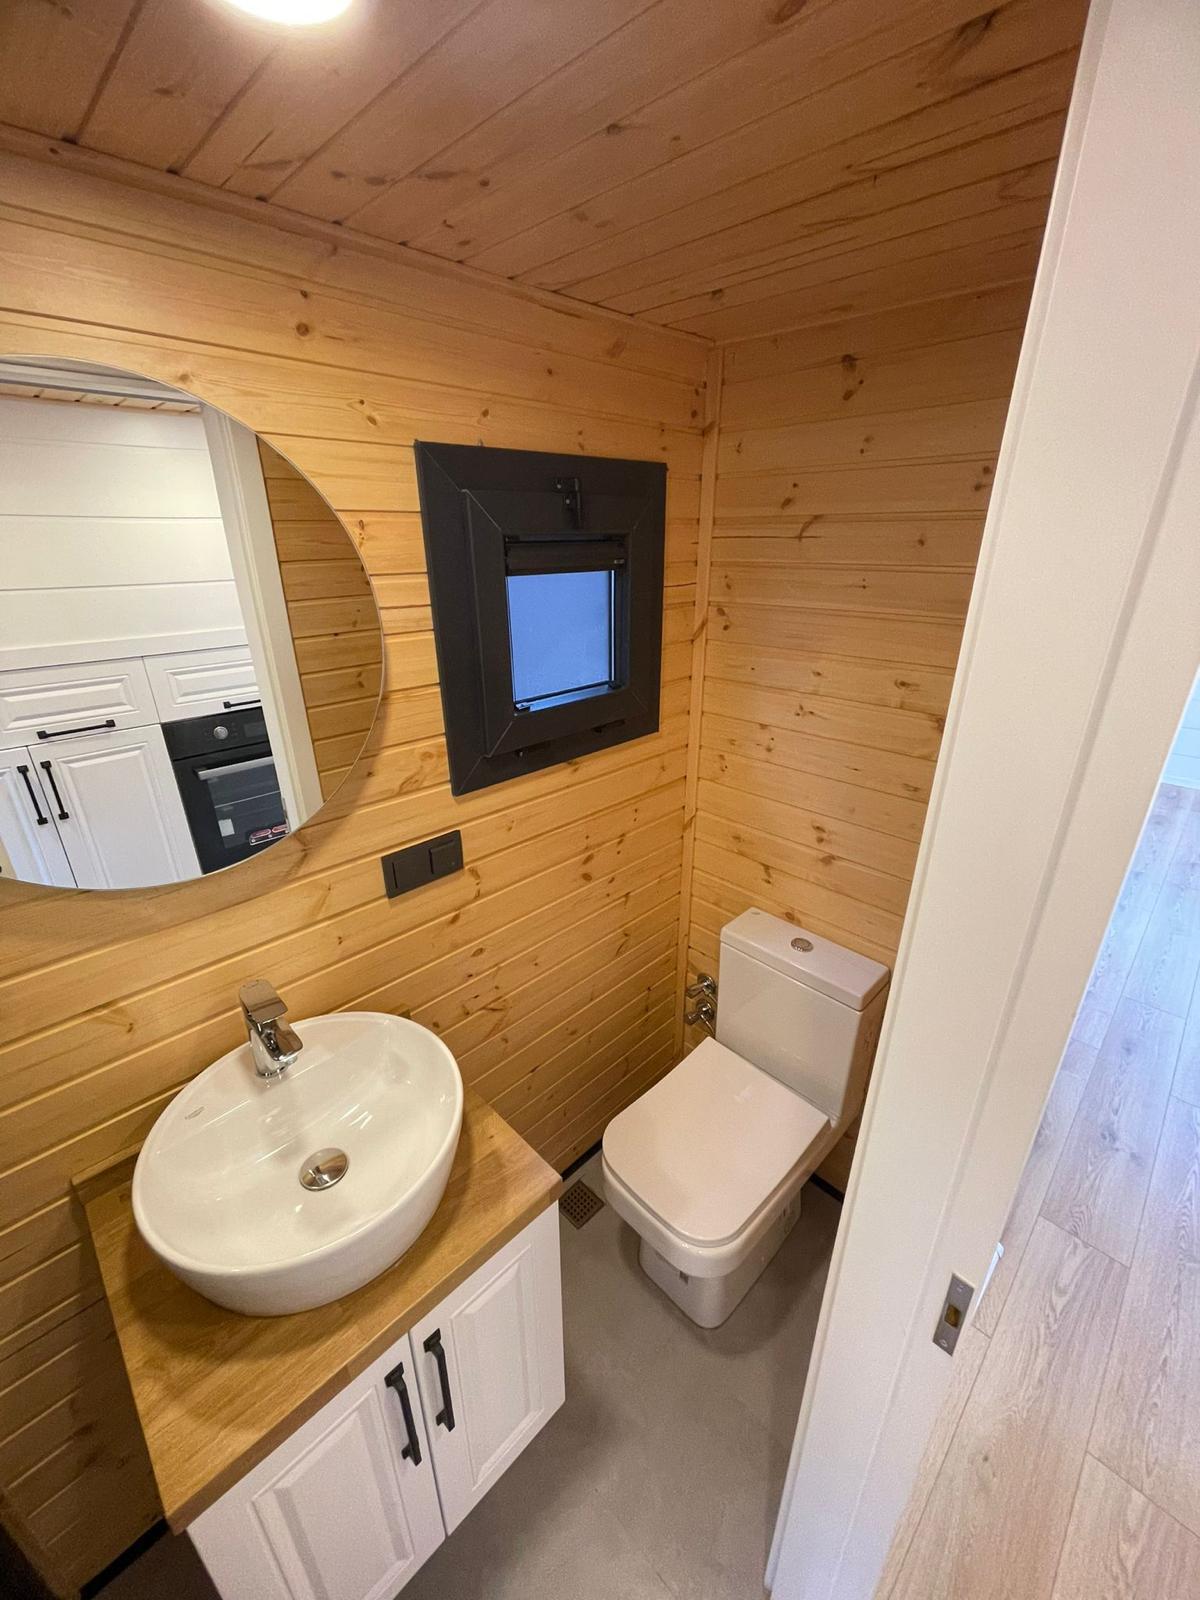 Tiny House ab 75.000 Euro als Revolution des Wohnens / Direkt vom Hersteller